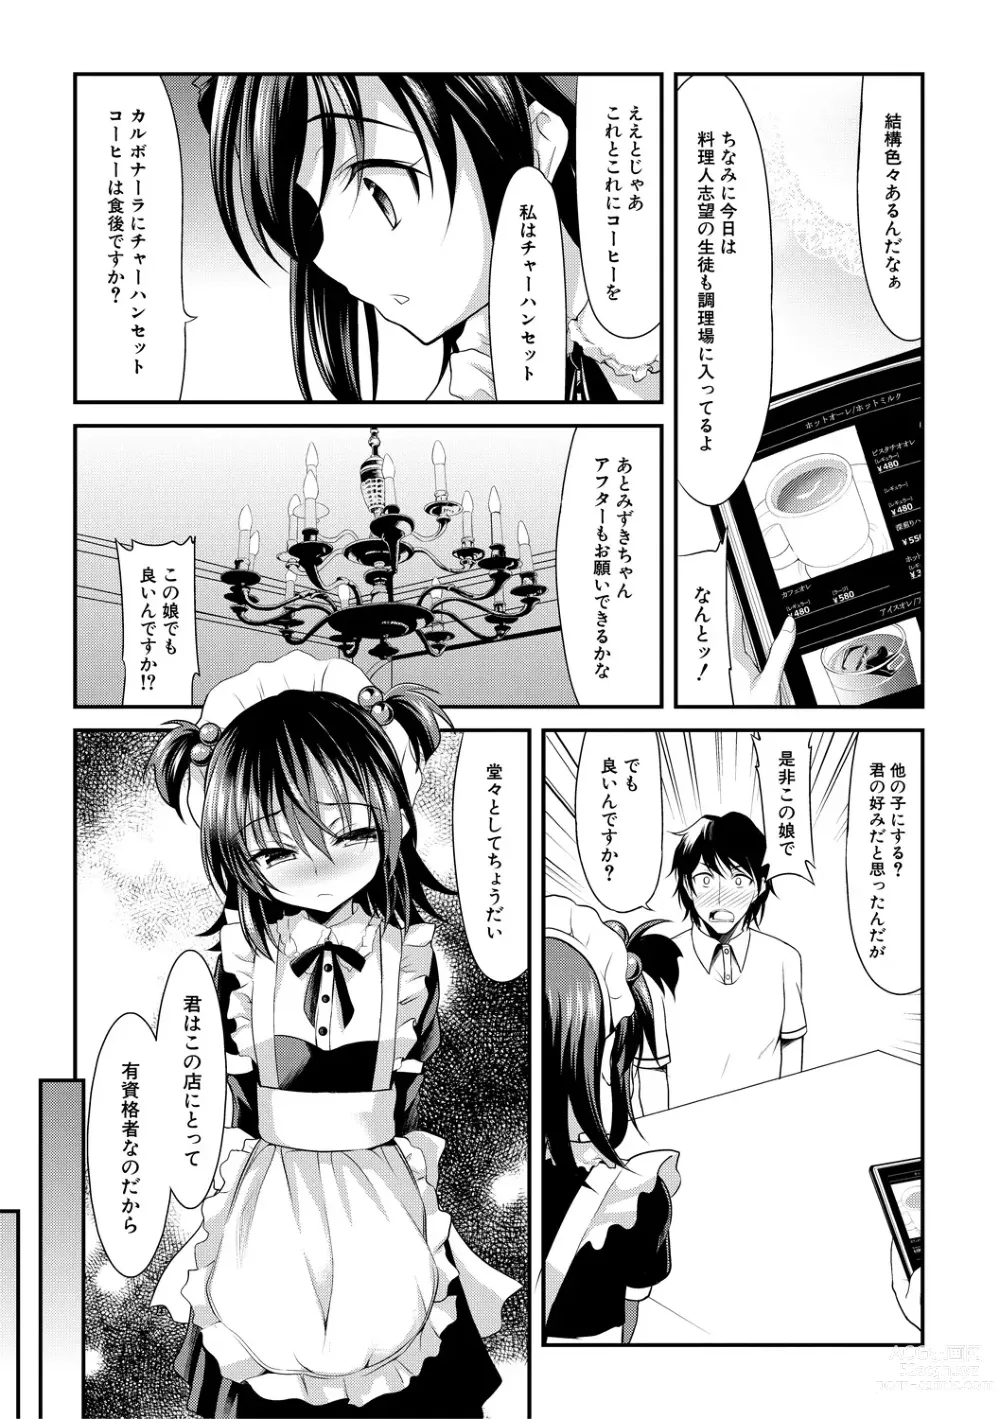 Page 5 of manga Chibikko Gakuen Soapland